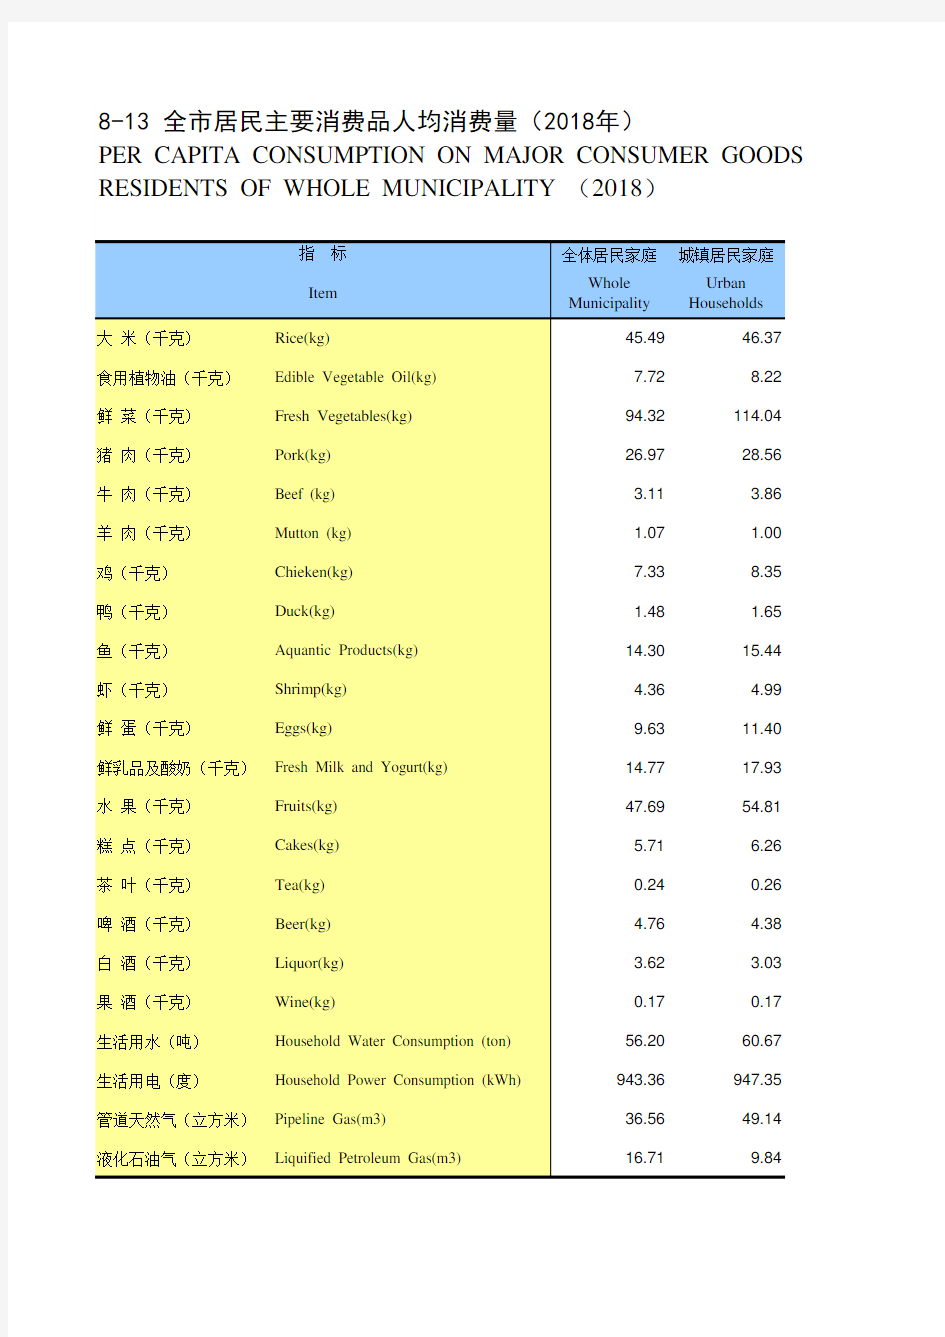 江苏常州市统计年鉴社会经济发展指标数据：8-13 全市居民主要消费品人均消费量(2018年)